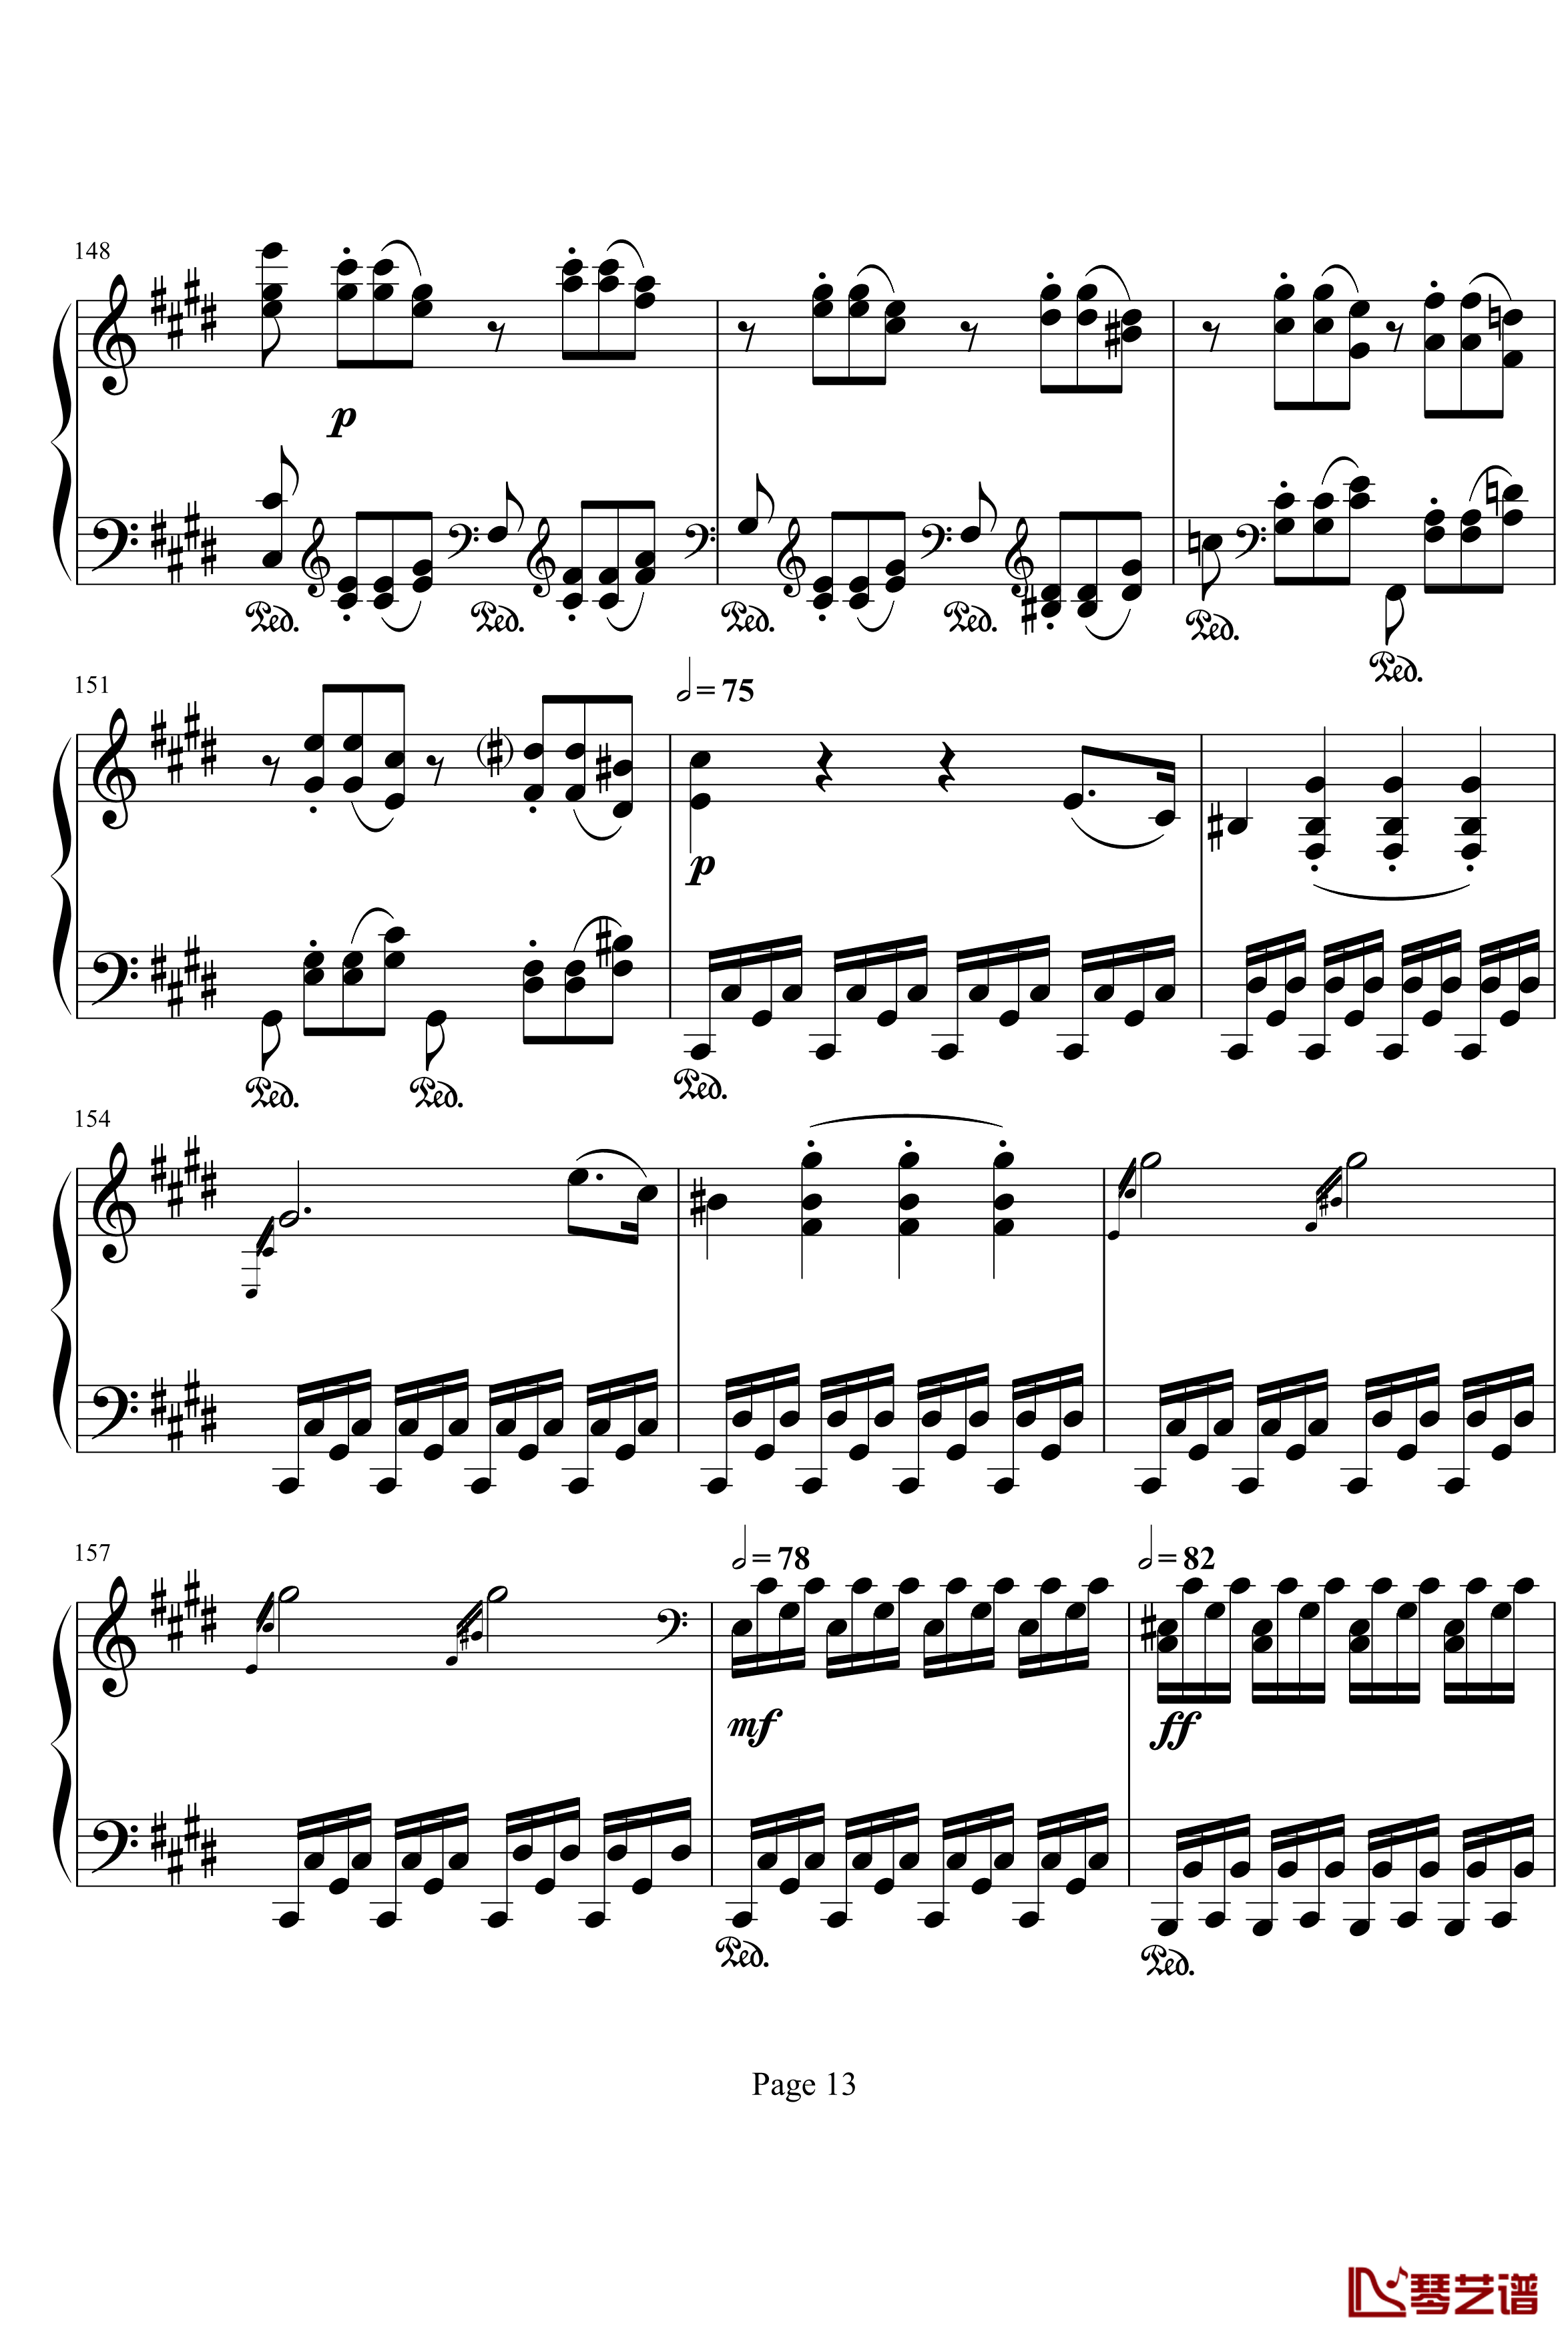 月光奏明曲钢琴谱-作品27之2-贝多芬-beethoven13